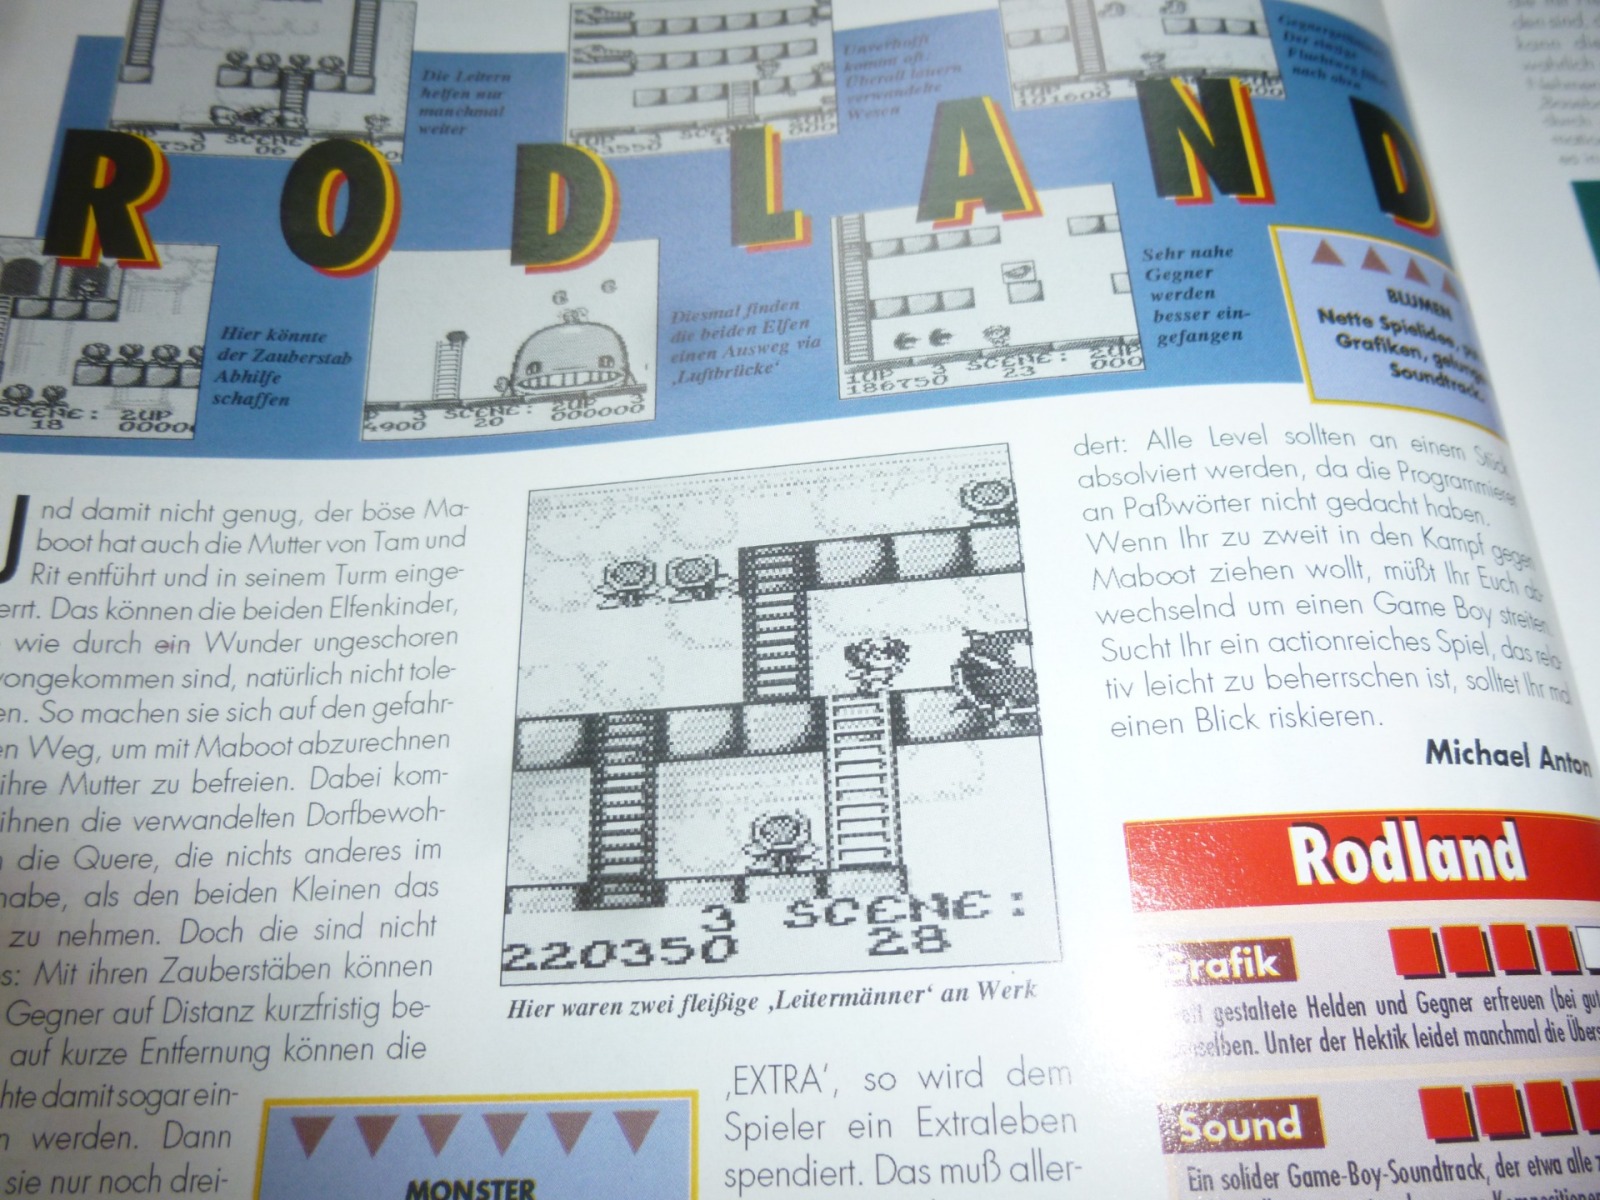 TOTAL Das unabhängige Magazin - 100% Nintendo - Ausgabe 7/93 1993 18